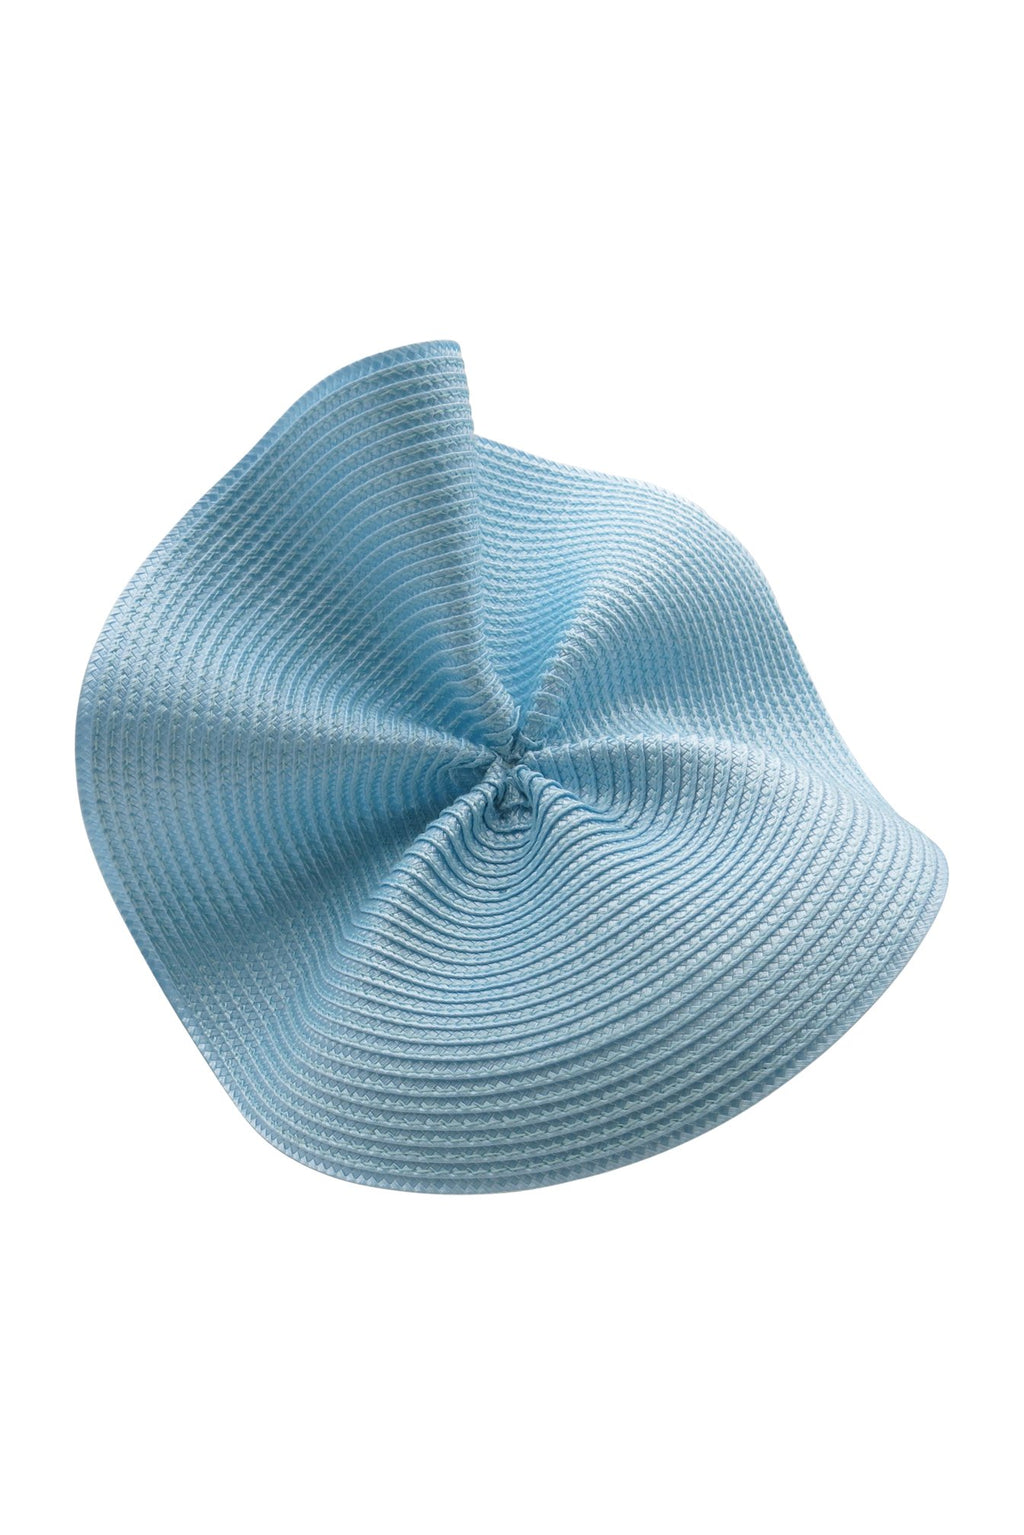 Morgan & Taylor Zaria Wave Plate Headpiece in Blue